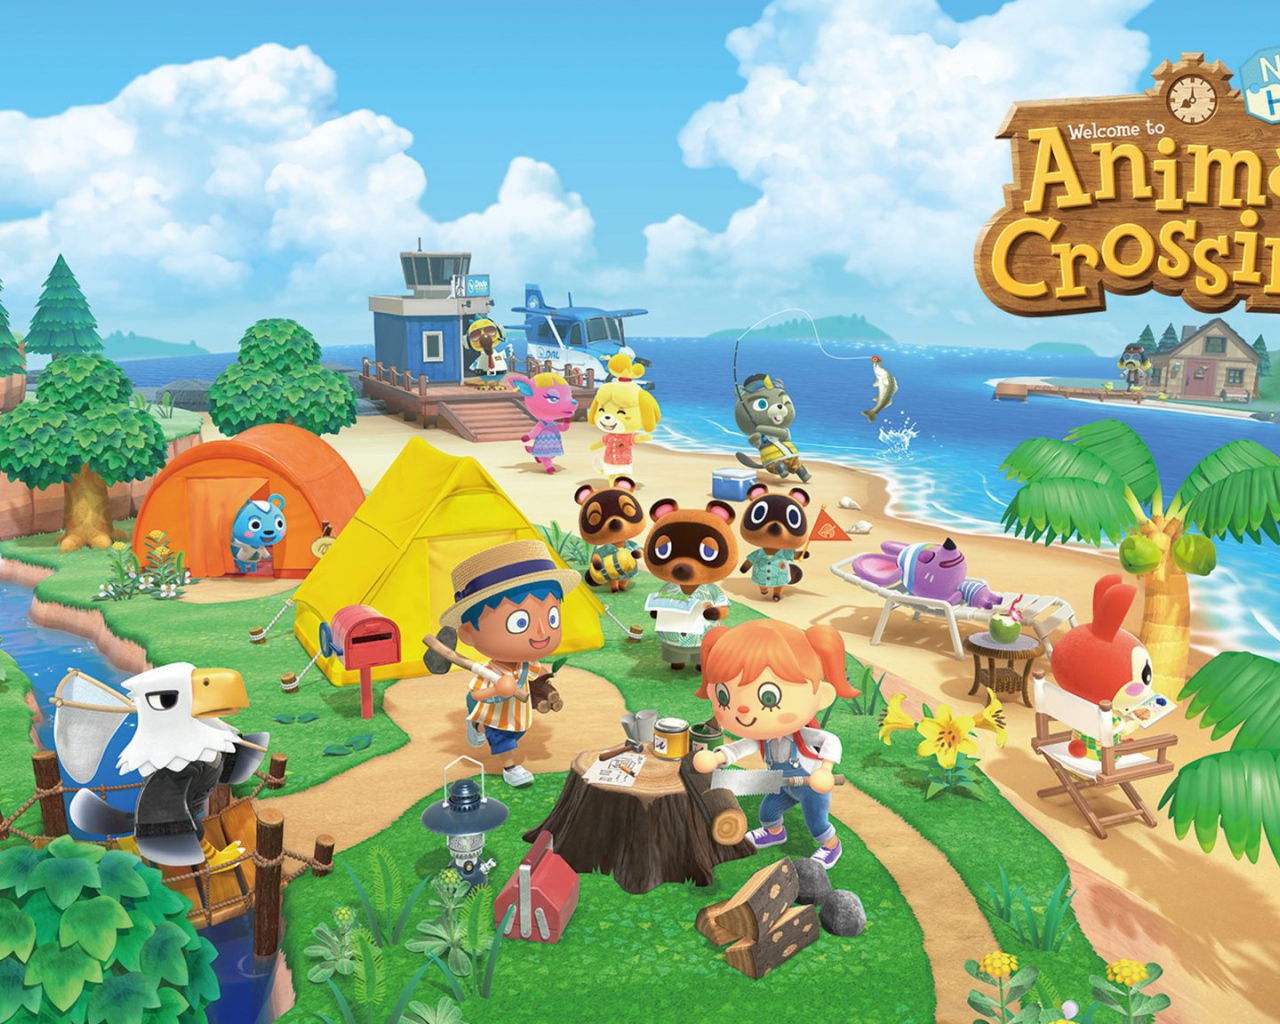 Постер новой компьютерной игры Animal Crossing: New Horizons, 2020